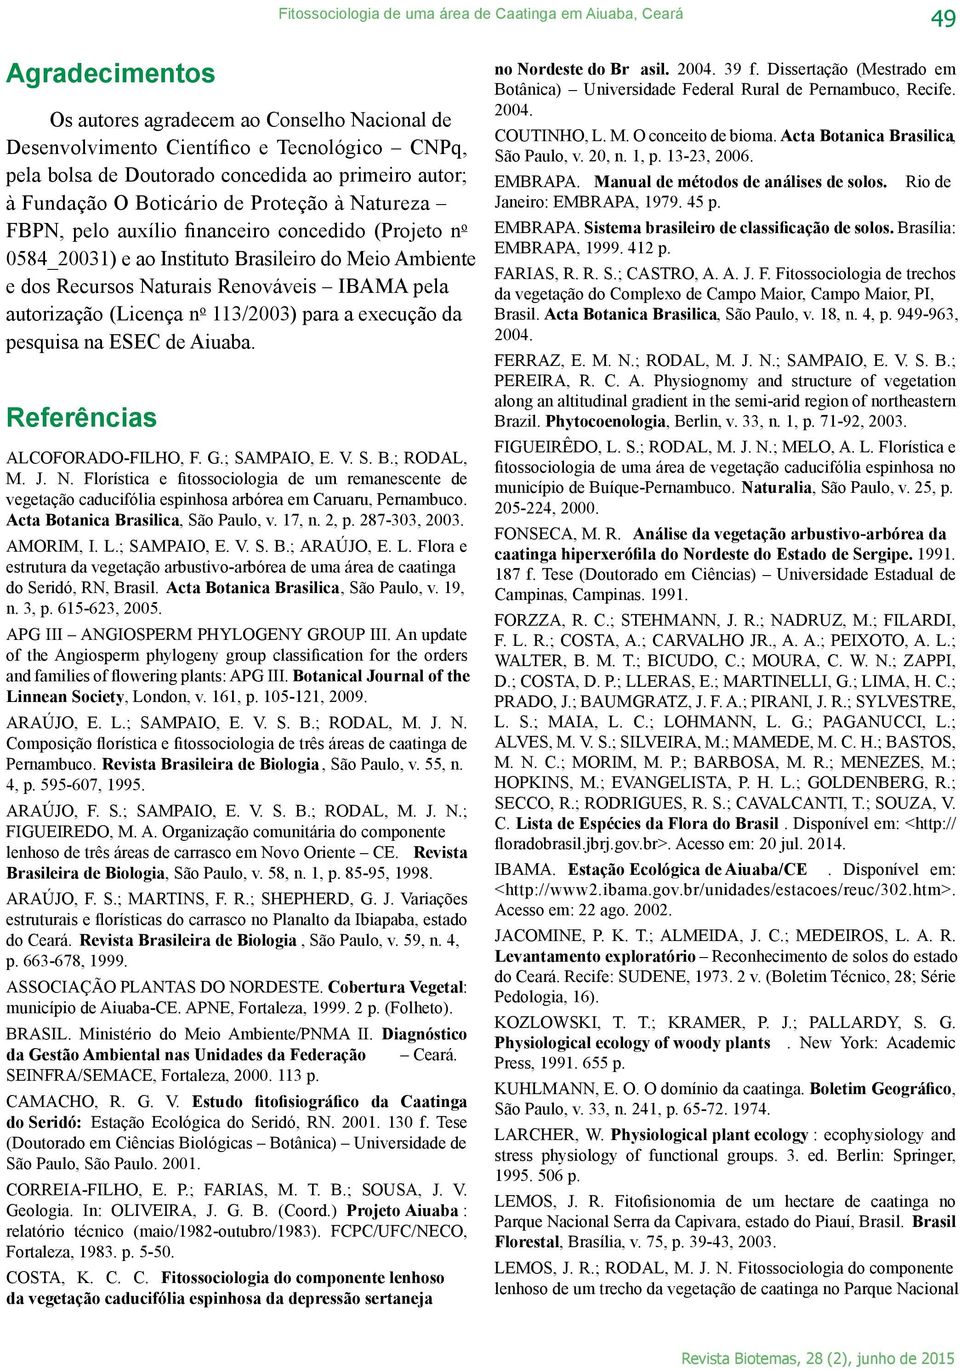 Renováveis IBAMA pela autorização (Licença n o 113/2003) para a execução da pesquisa na ESEC de Aiuaba. Referências ALCOFORADO-FILHO, F. G.; SAMPAIO, E. V. S. B.; RODAL, M. J. N.